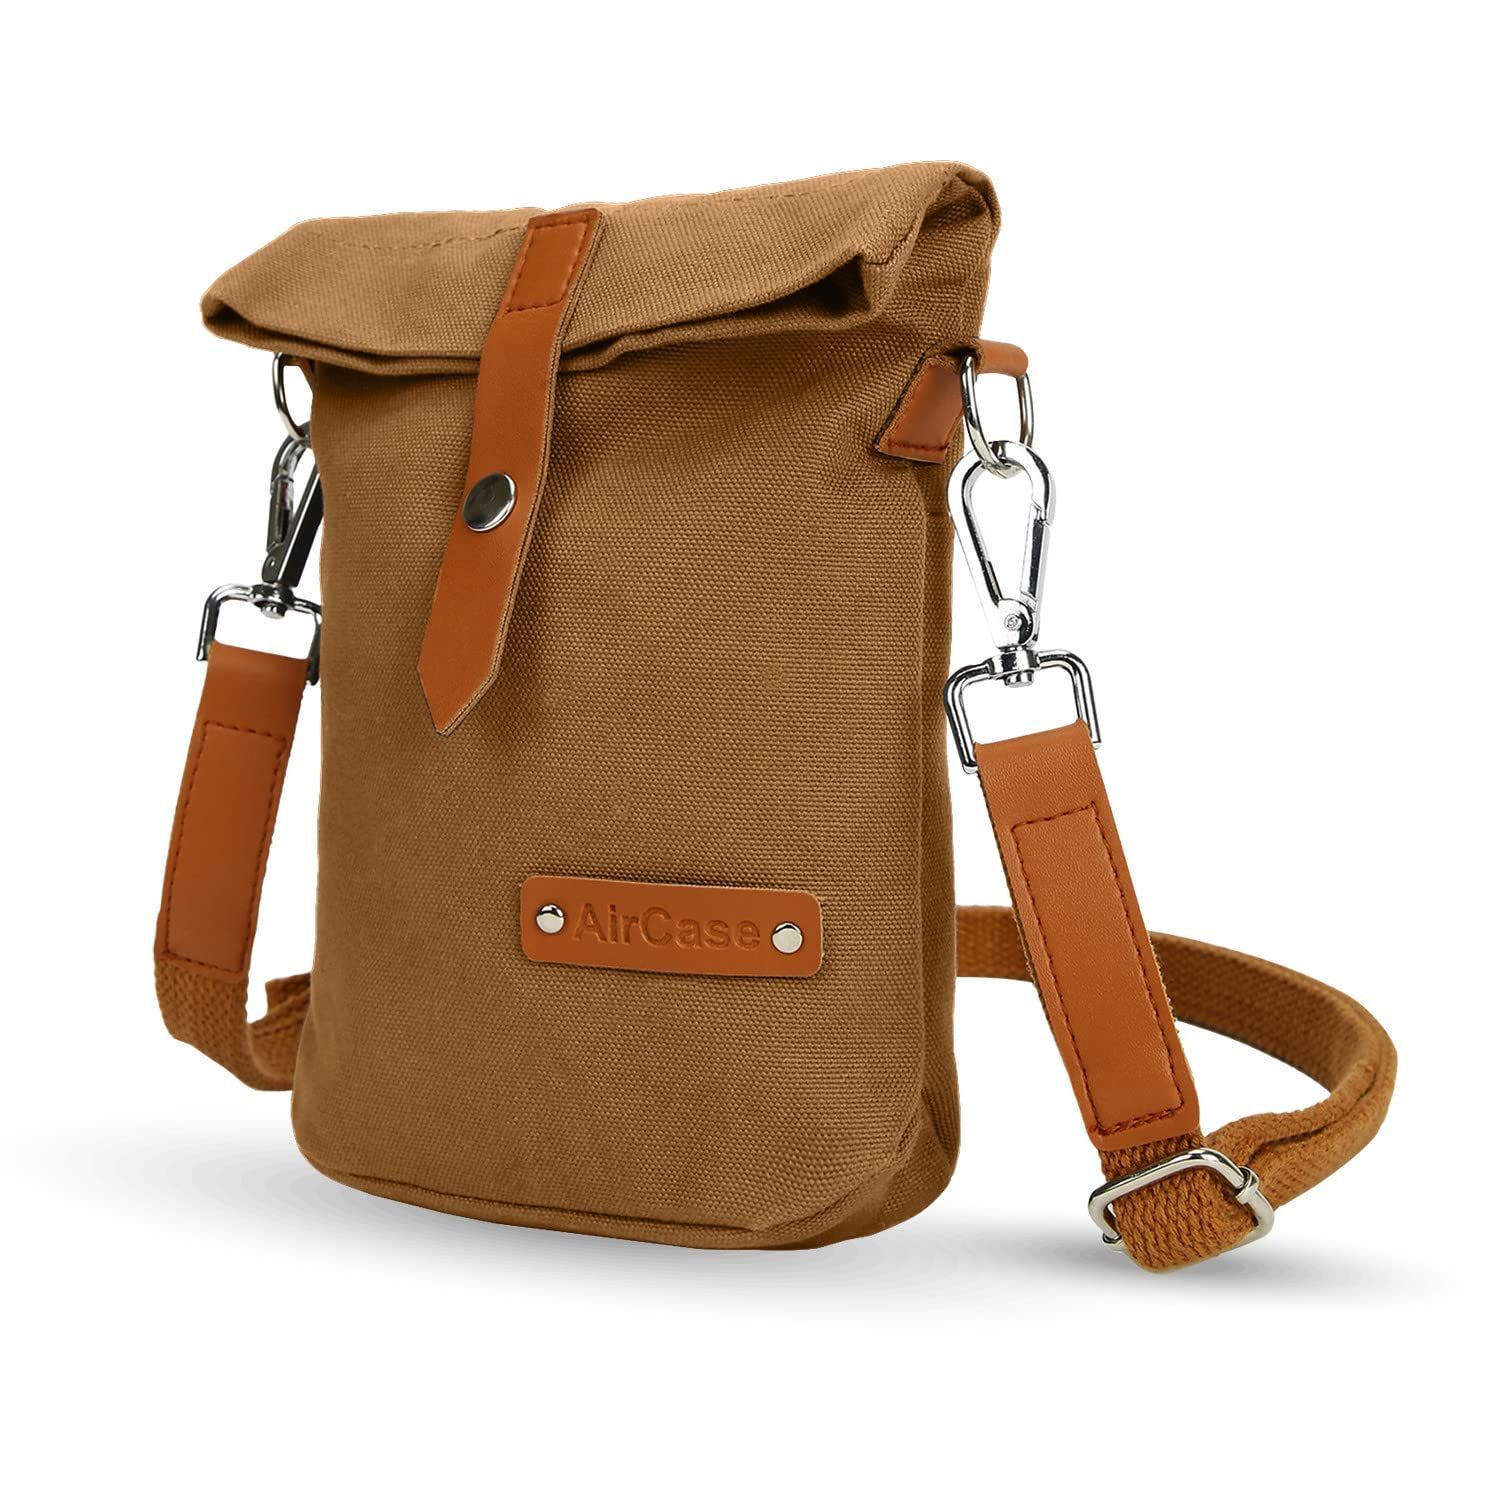 Indha Sling Bag | Handcrafted Sling Bag |Green Canvas Sling Bag| Travel  Utility | Cross Body Bag | Gifting | Shoulder Bag | Sling Bag For Boys |  Gifts For Him |